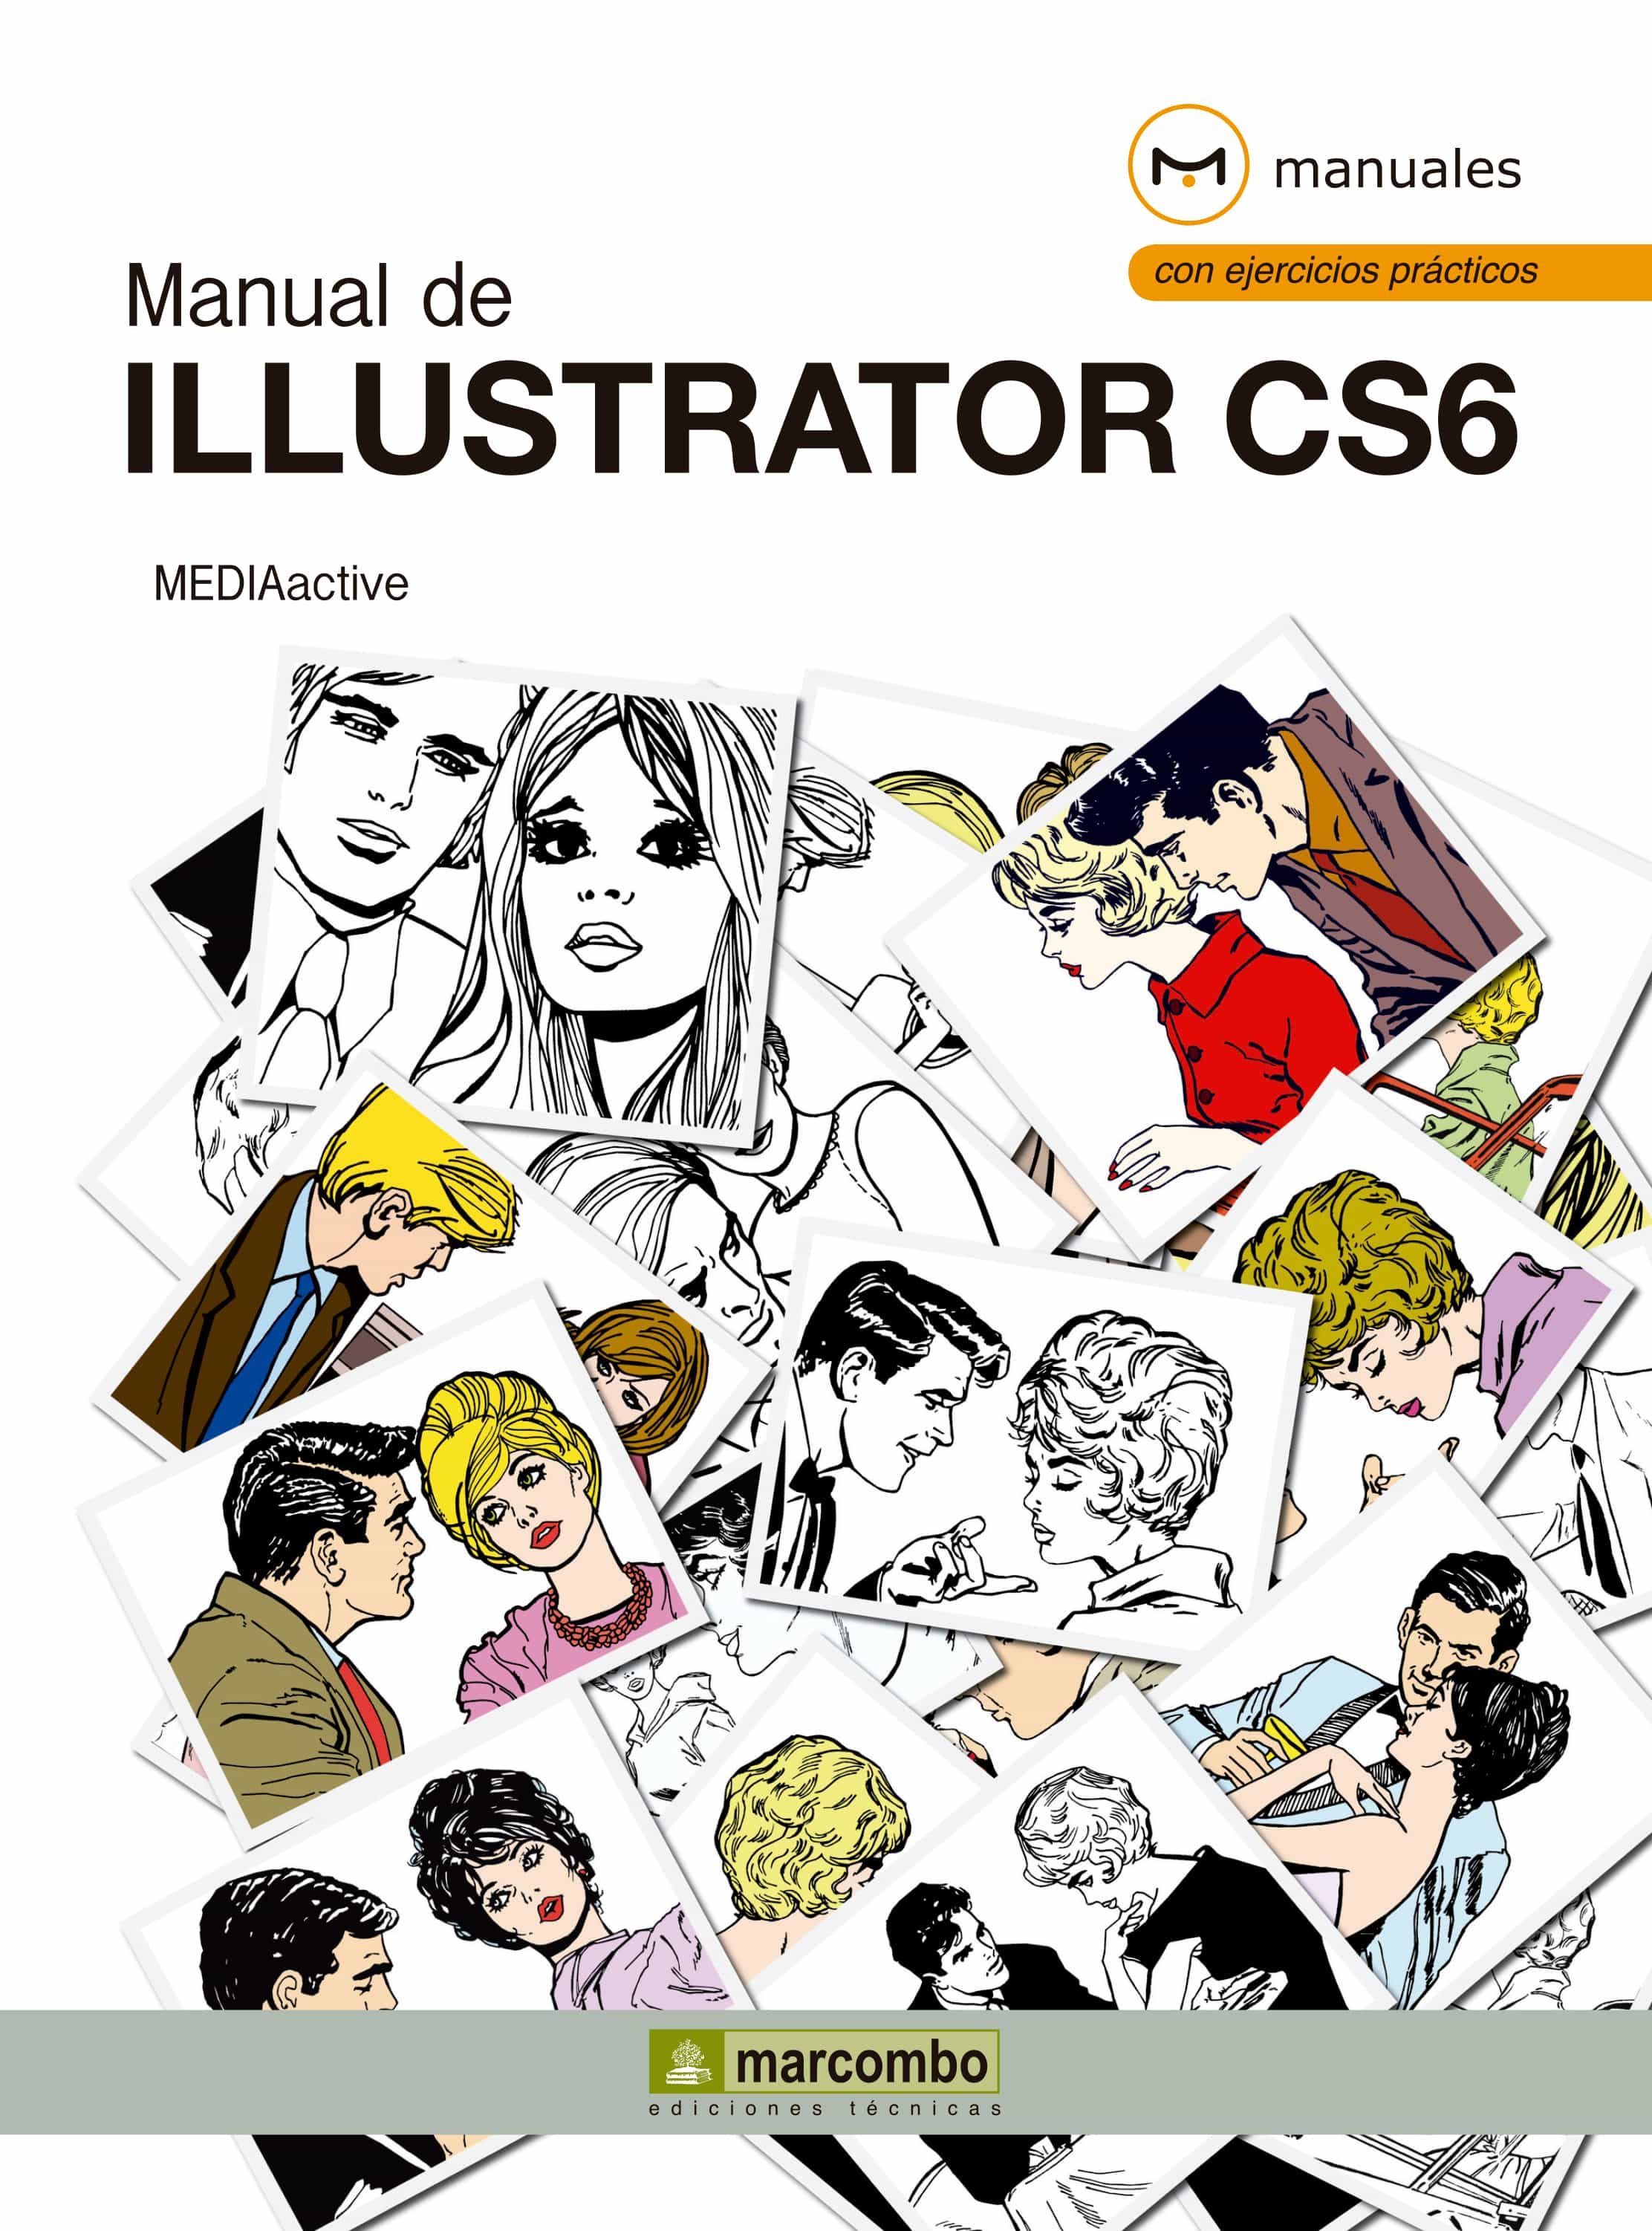 adobe illustrator cs6 manual download